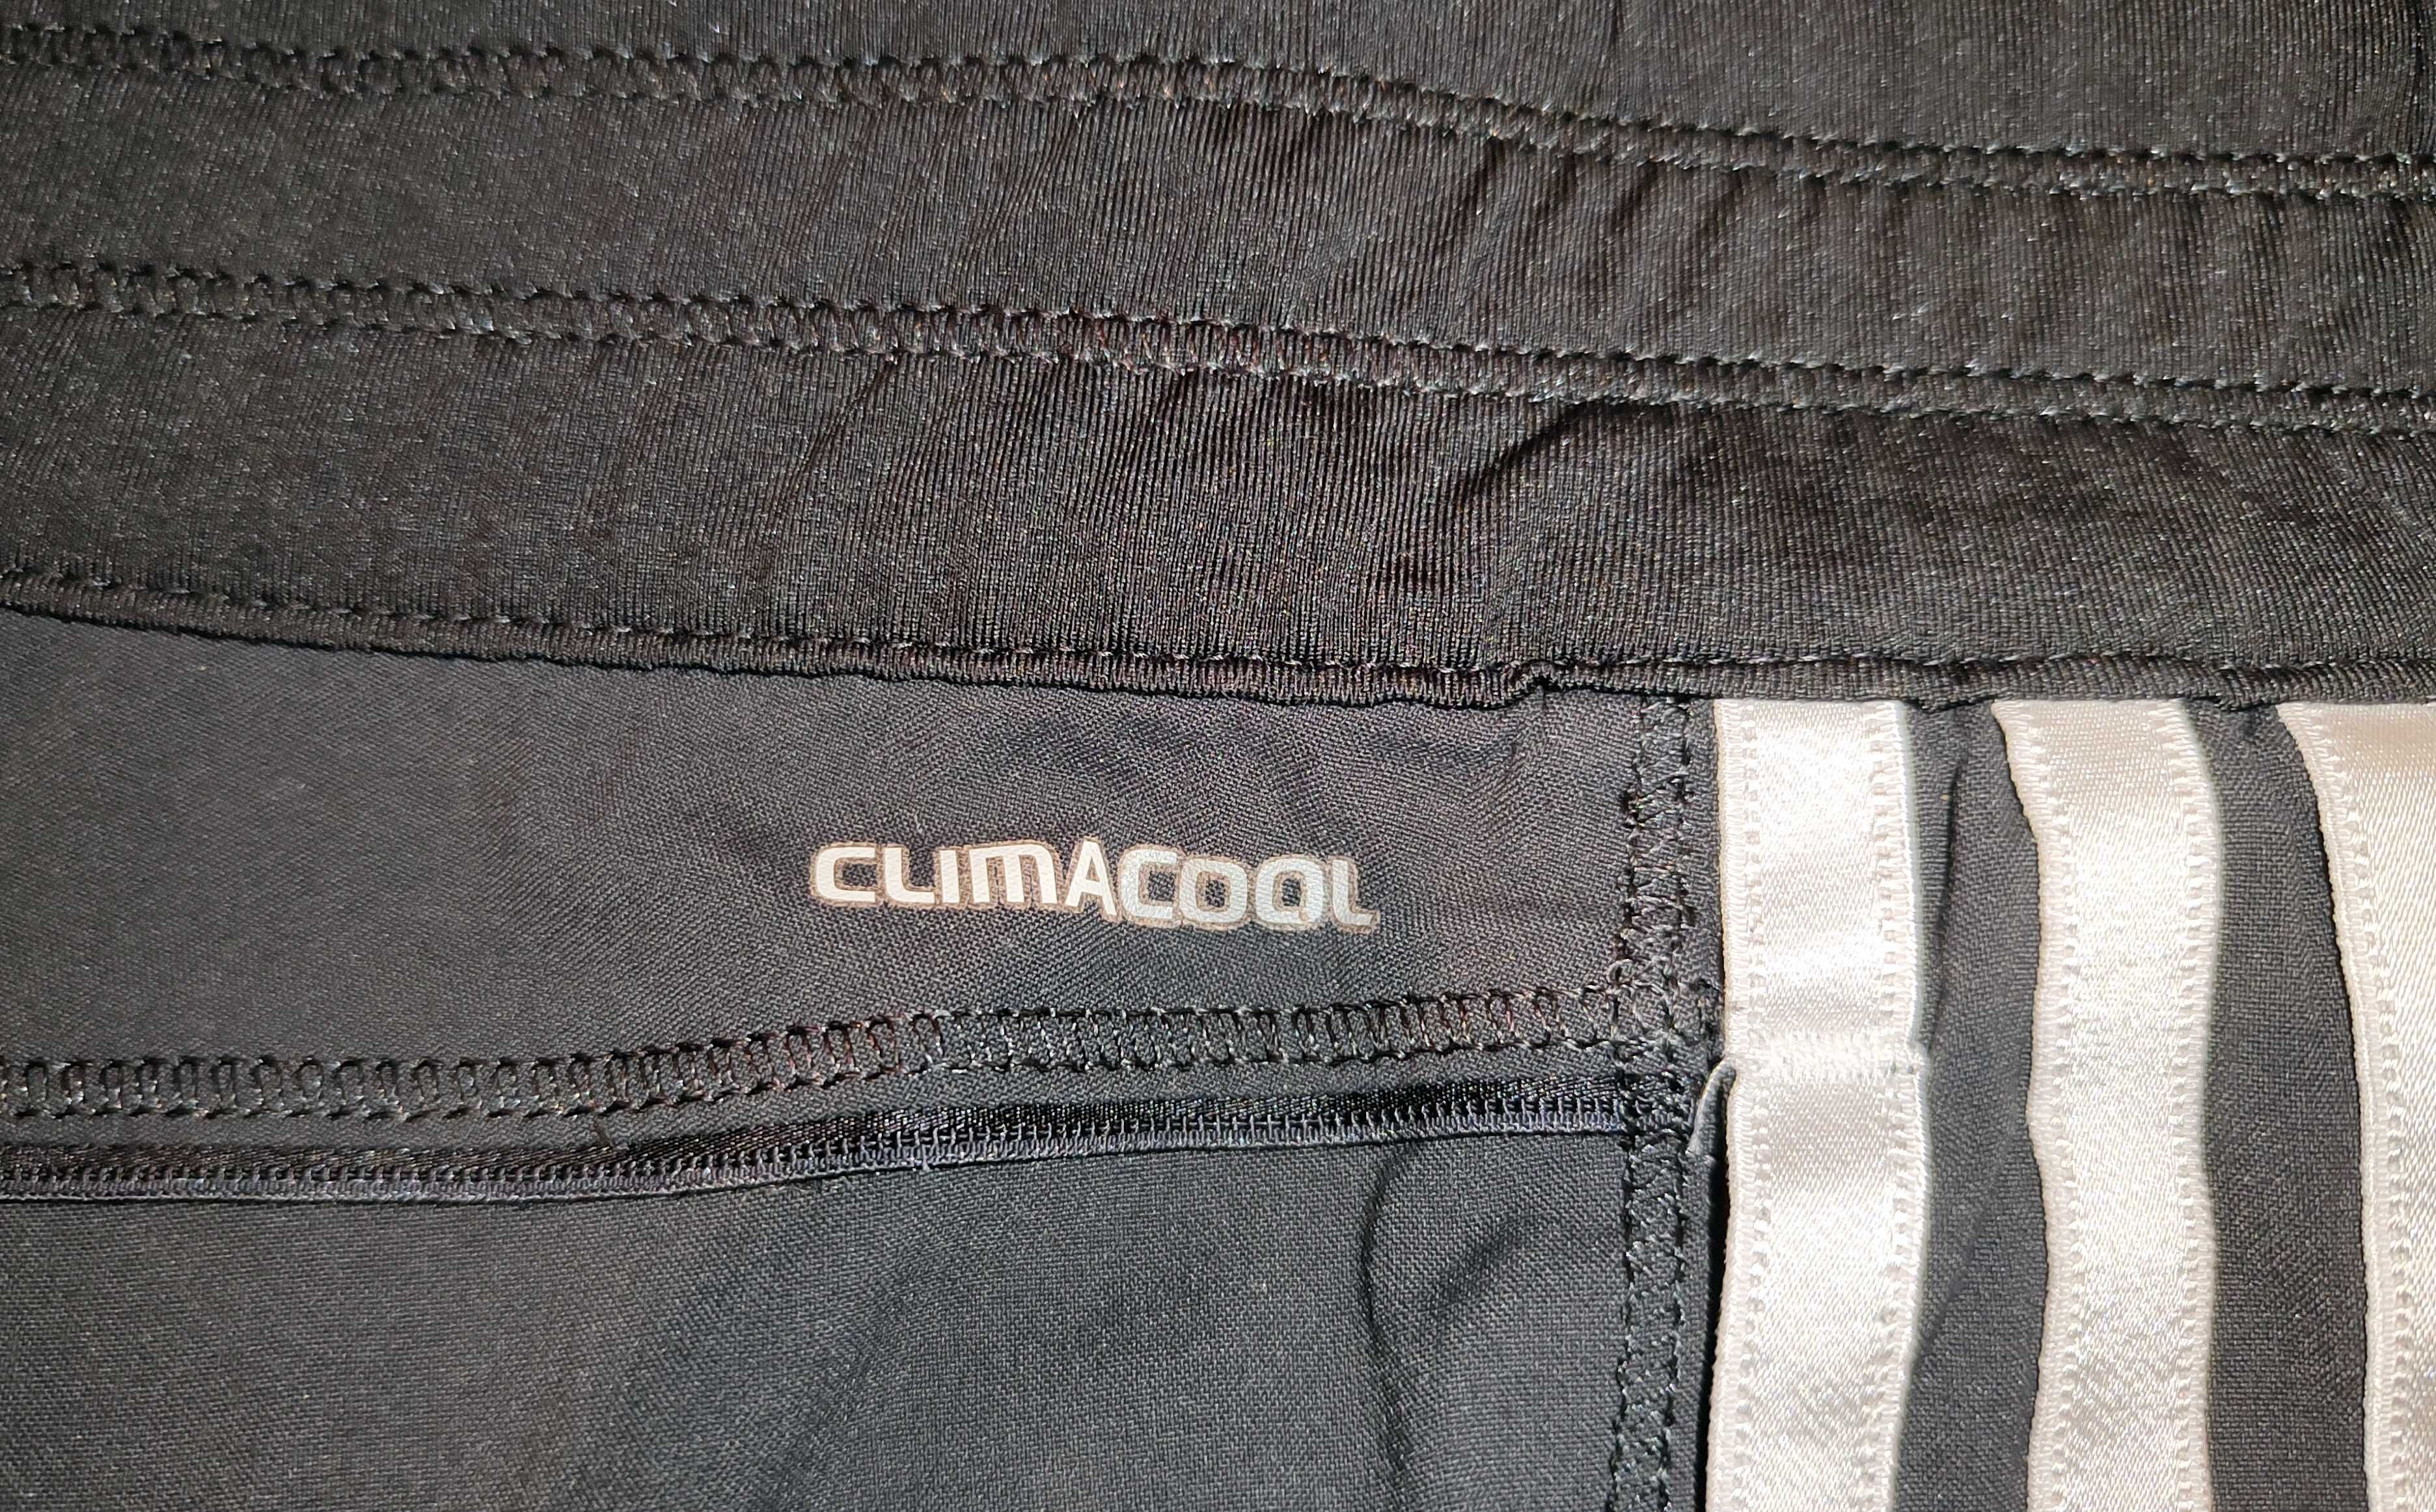 ADIDAS Climacool super spodnie sportowe trekkingowe damskie 42 XL